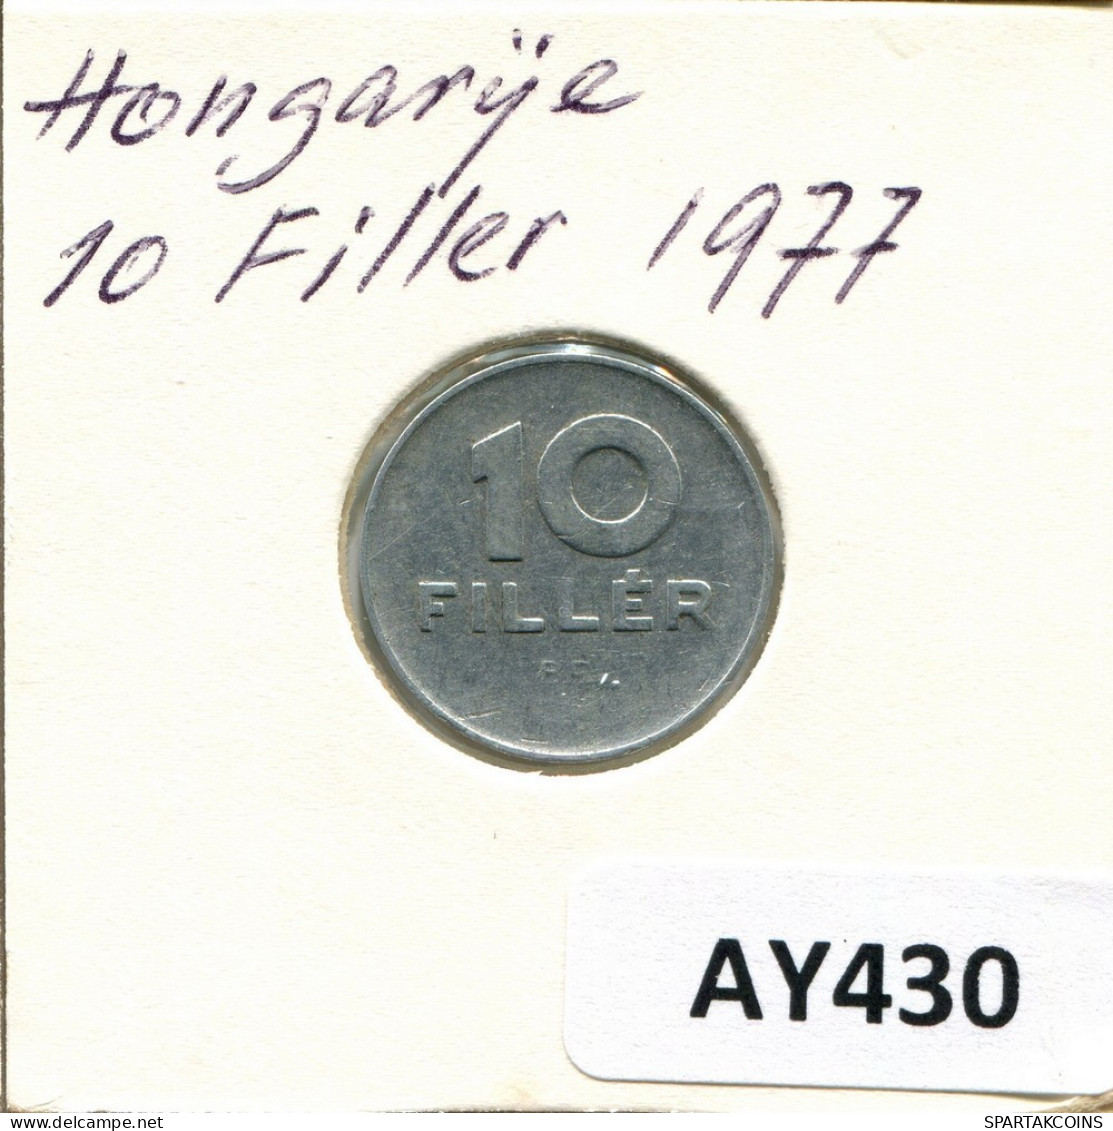 10 FILLER 1977 HONGRIE HUNGARY Pièce #AY430.F.A - Ungarn